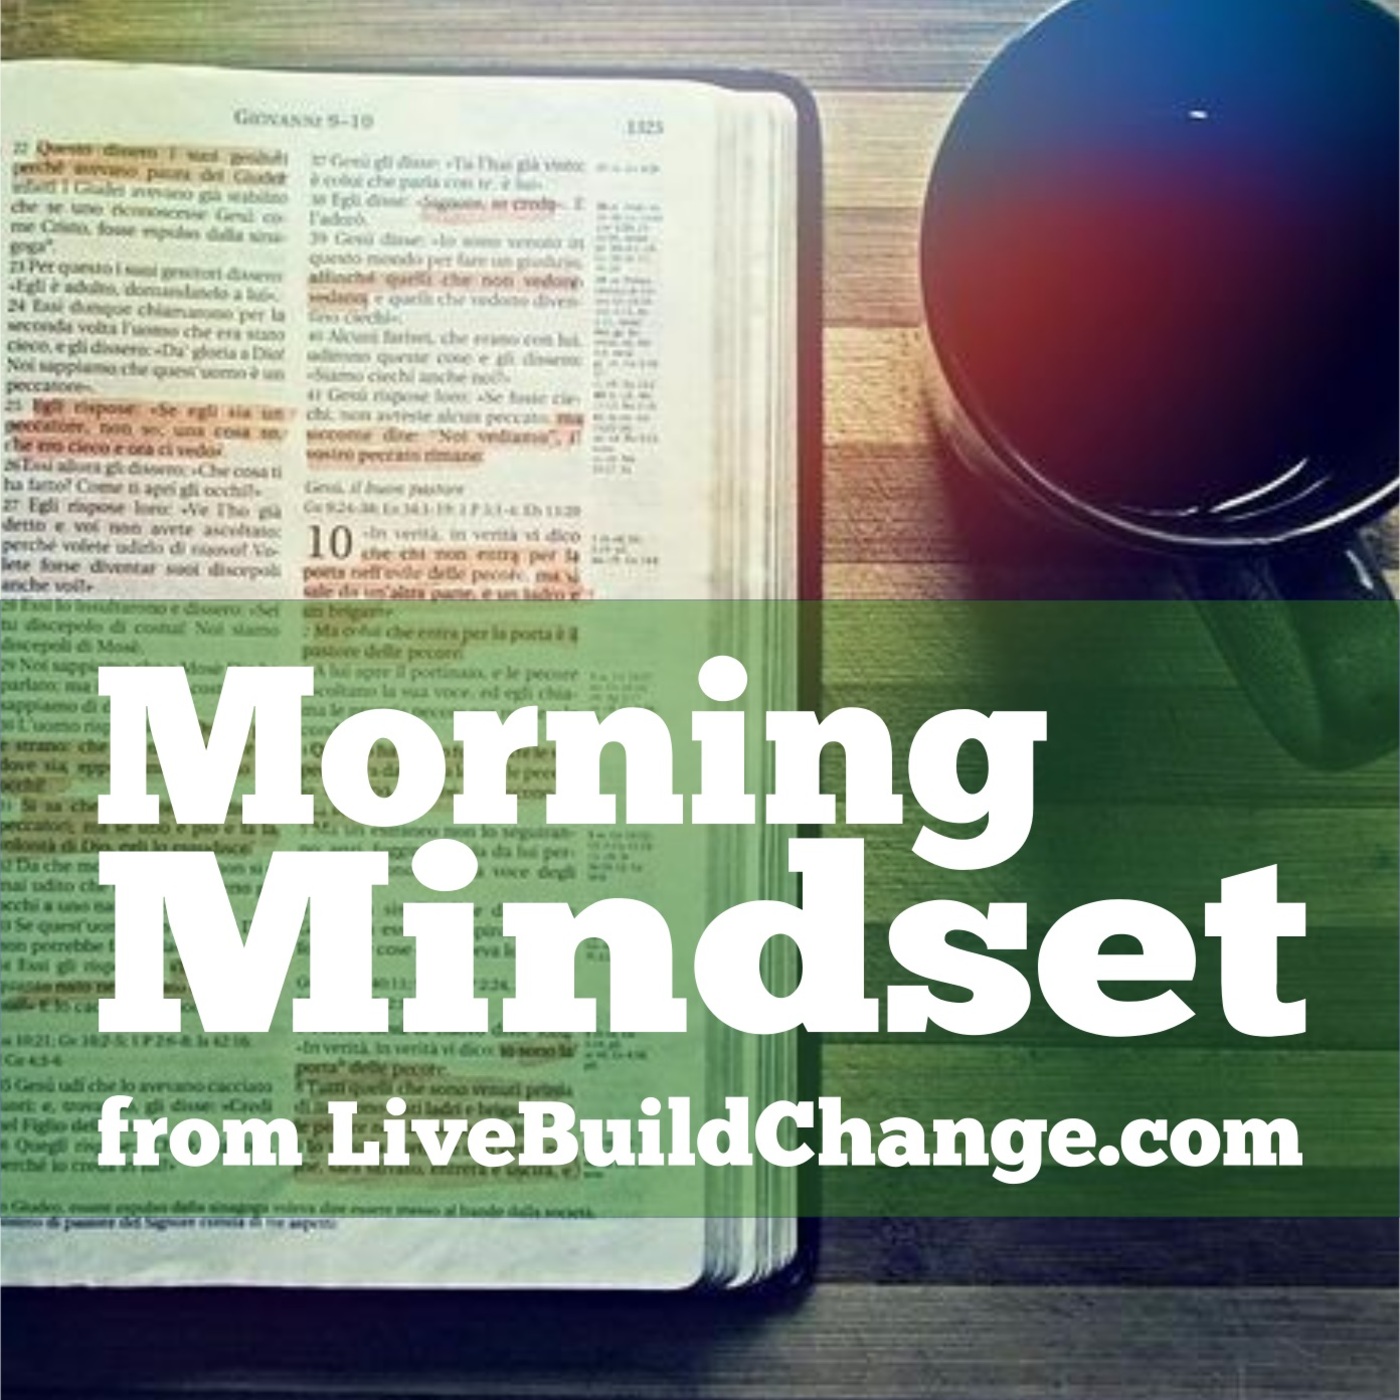 November 6 Morning Mindset from Live Build Change